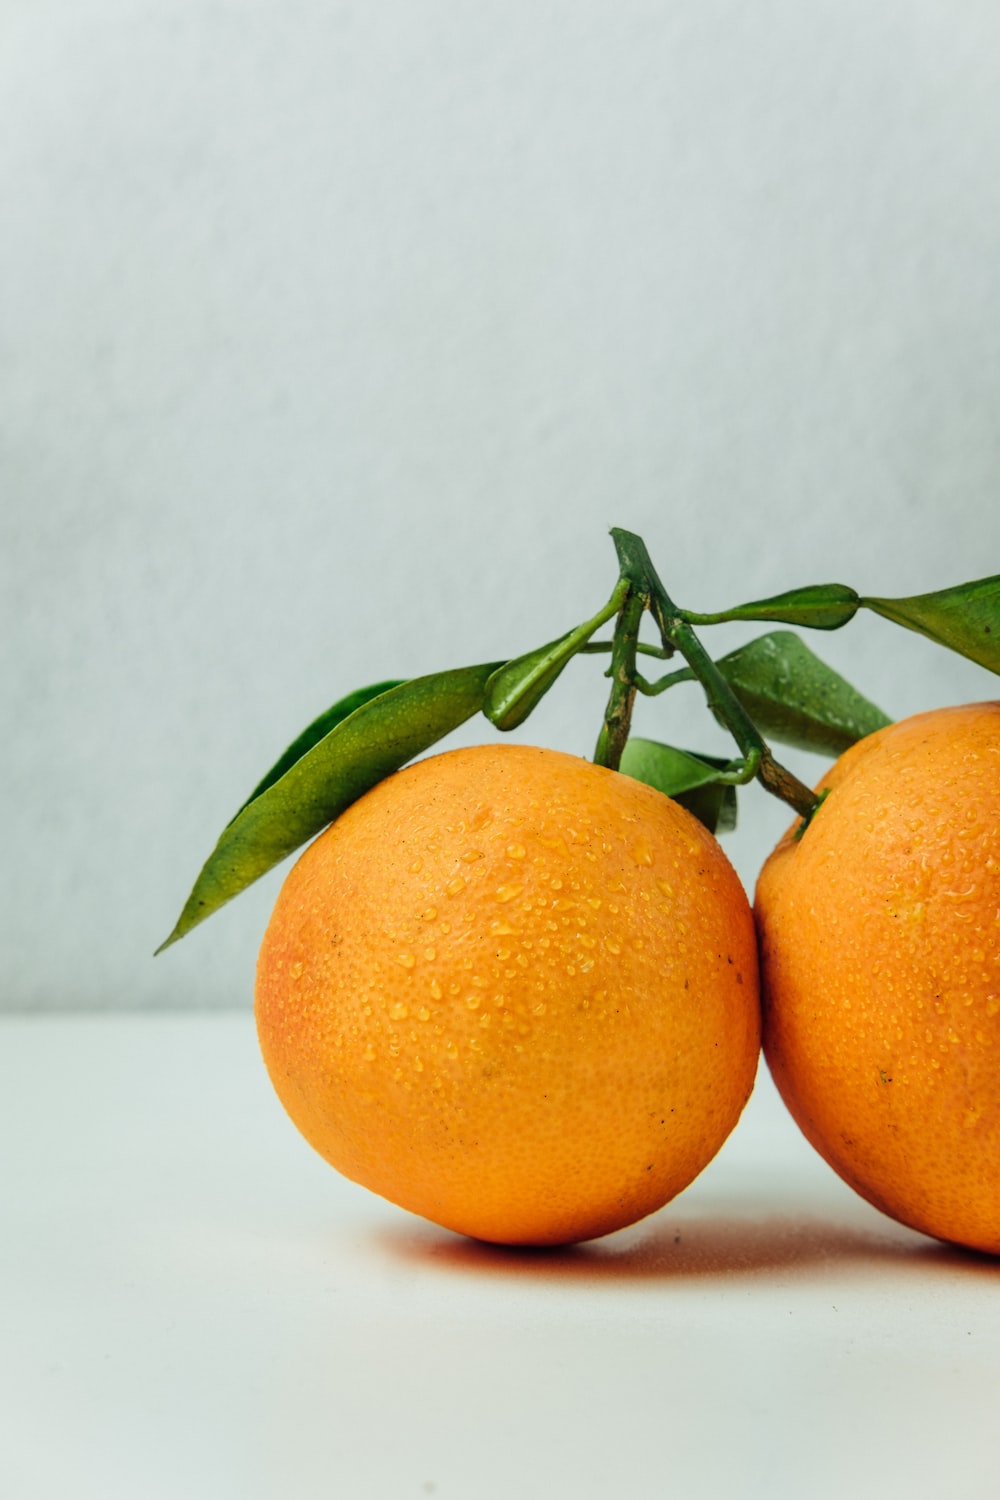 Orange Fruit Picture. Download Free Image